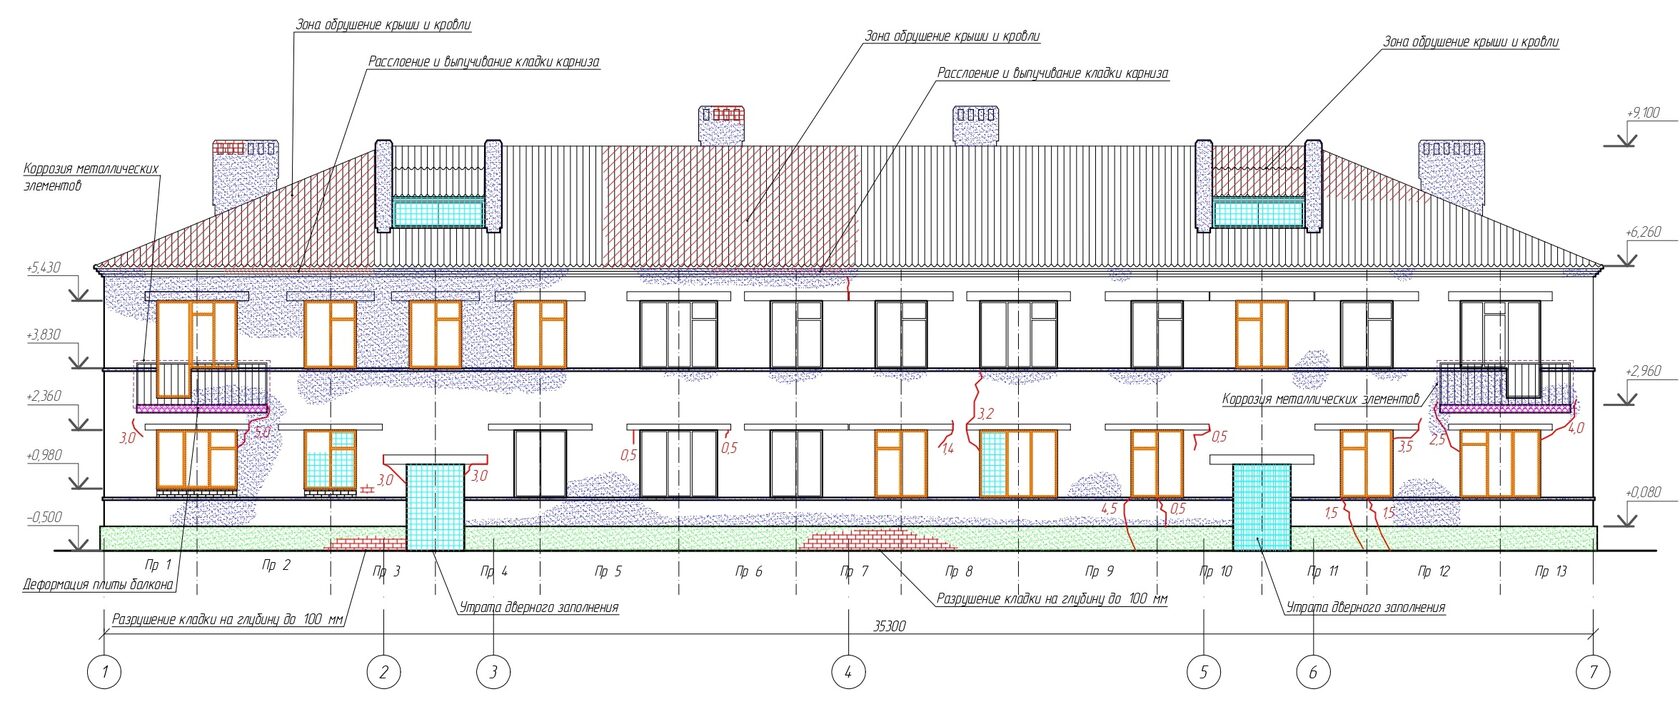 Схема расположения дефектов на фасаде обследуемого здания